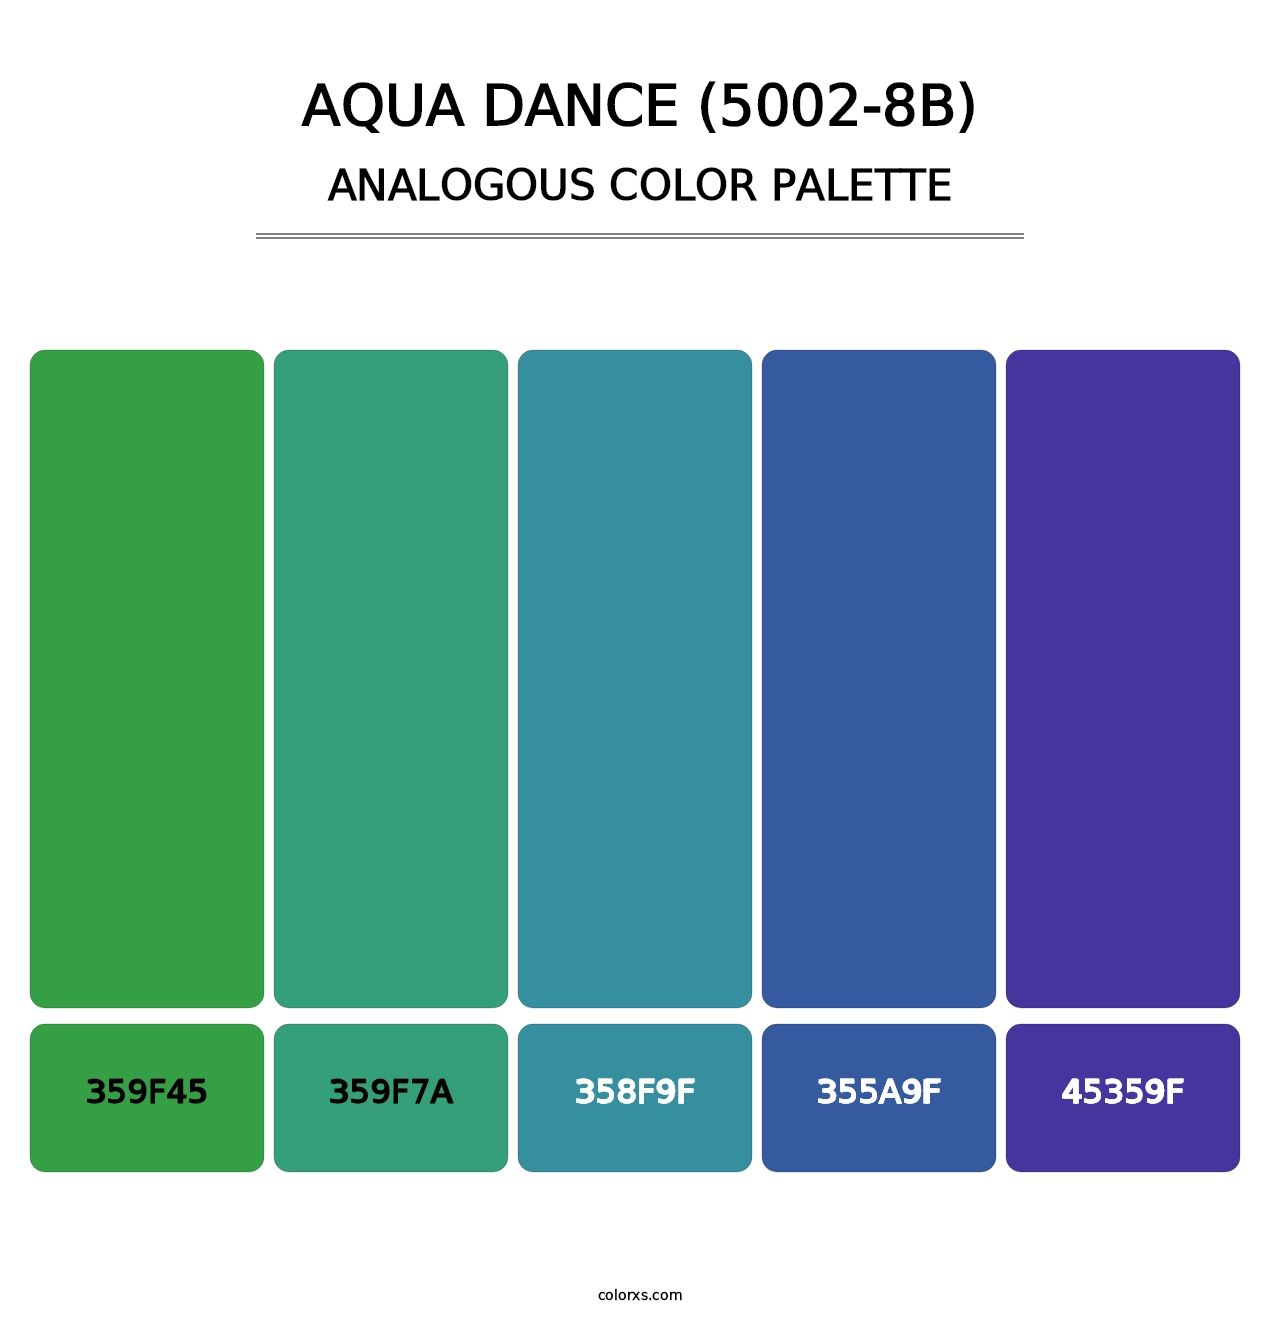 Aqua Dance (5002-8B) - Analogous Color Palette